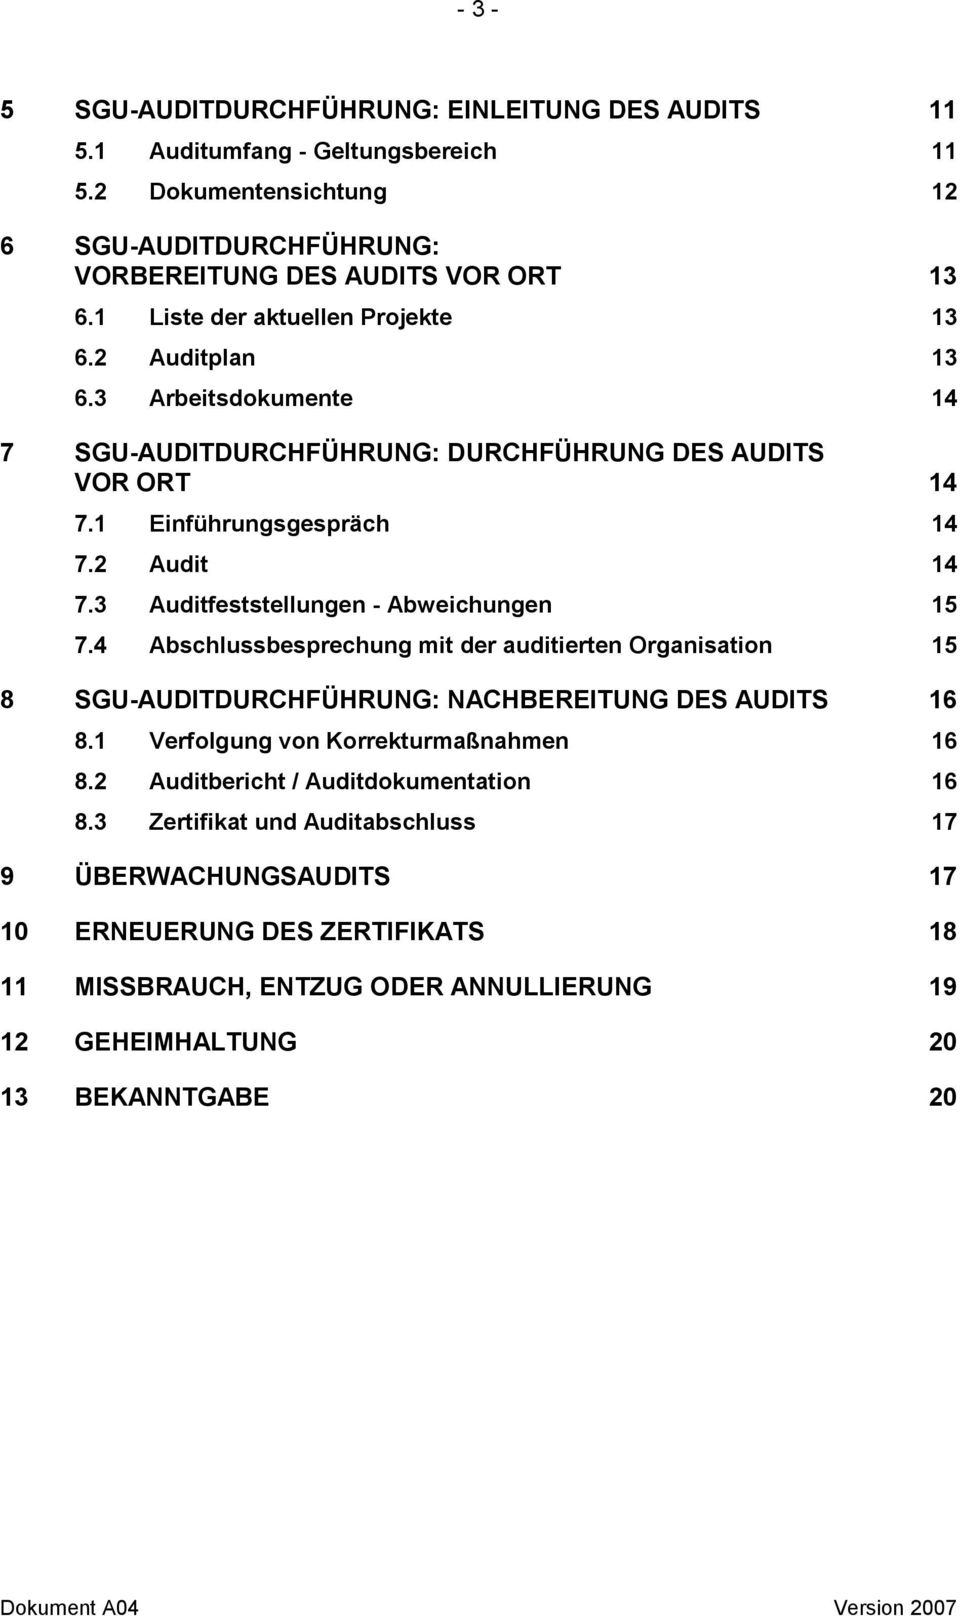 3 Auditfeststellungen - Abweichungen 15 7.4 Abschlussbesprechung mit der auditierten Organisation 15 8 SGU-AUDITDURCHFÜHRUNG: NACHBEREITUNG DES AUDITS 16 8.